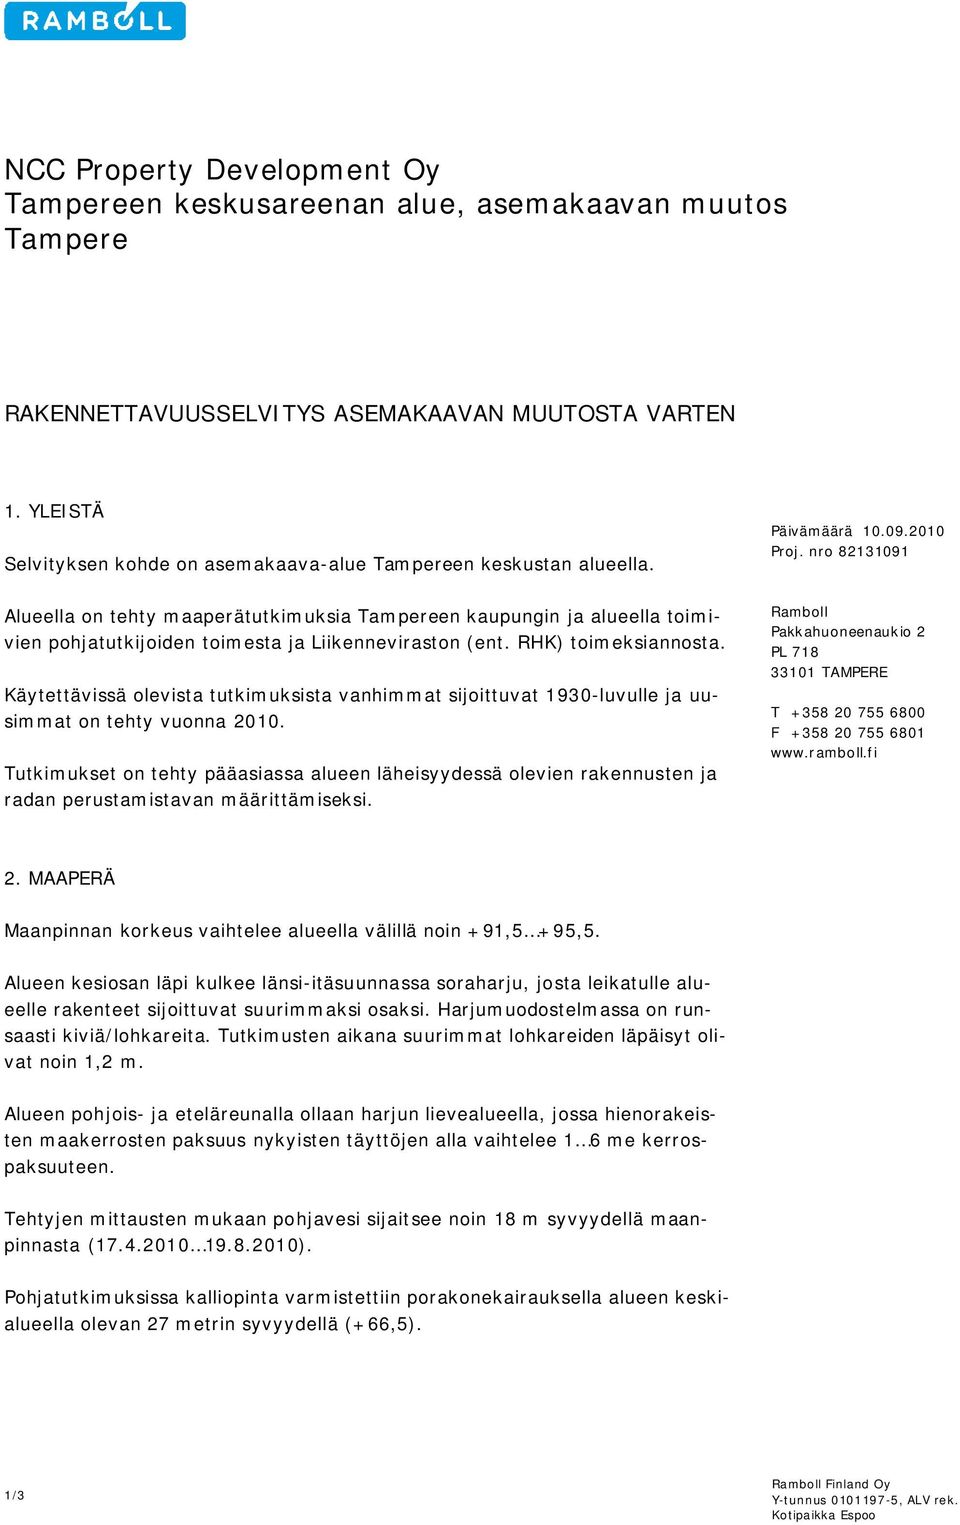 nro 82131091 Alueella on tehty maaperätutkimuksia Tampereen kaupungin ja alueella toimivien pohjatutkijoiden toimesta ja Liikenneviraston (ent. RHK) toimeksiannosta.